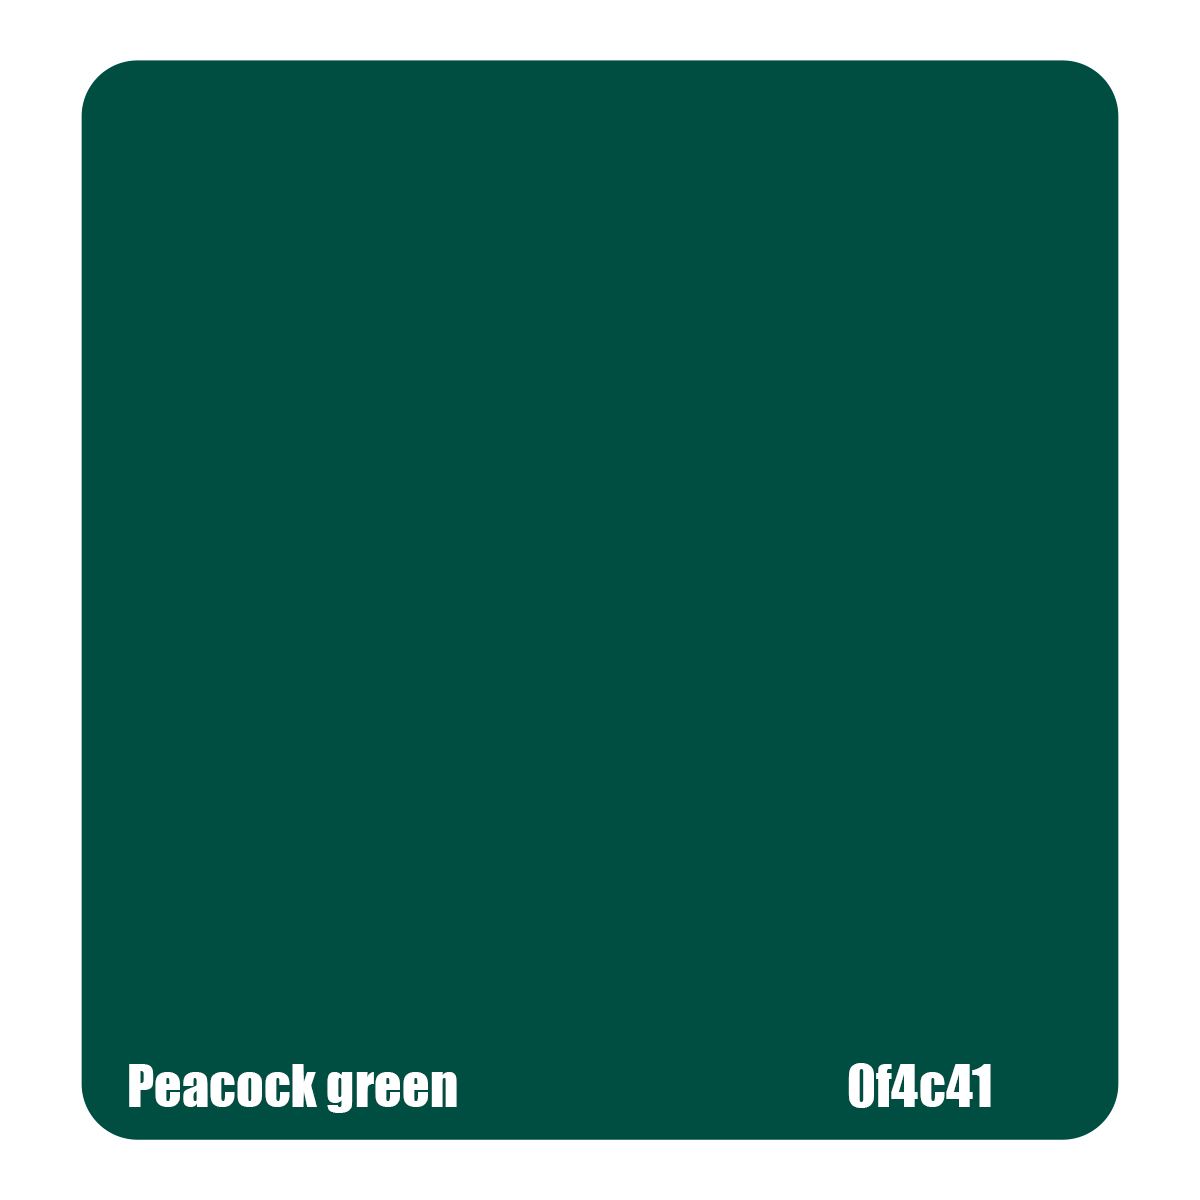 Tinta Peacock Green